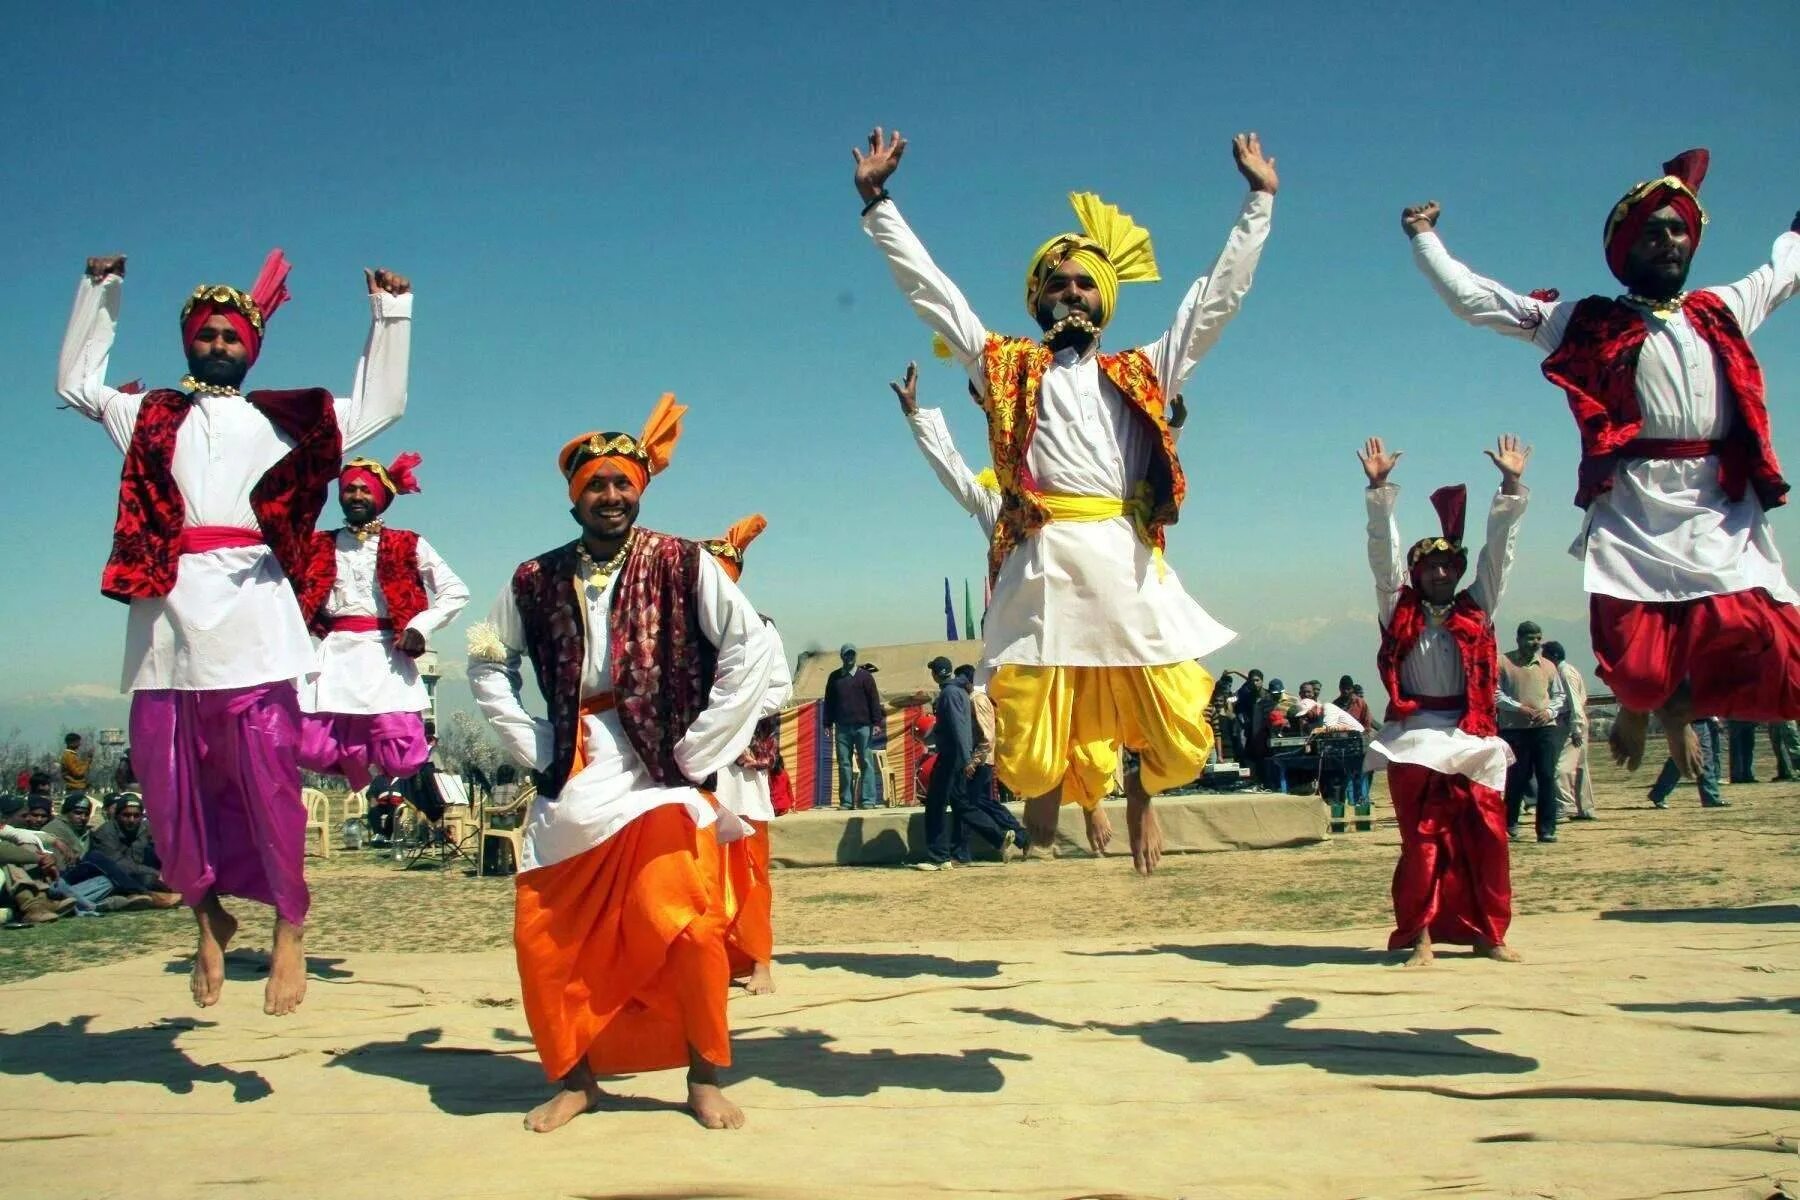 History and traditions. Пенджаб Индия ,Бхангра. Бхангра танец. Пенджабцы народ в Индии. Пенджабский народный танец Бхангра.